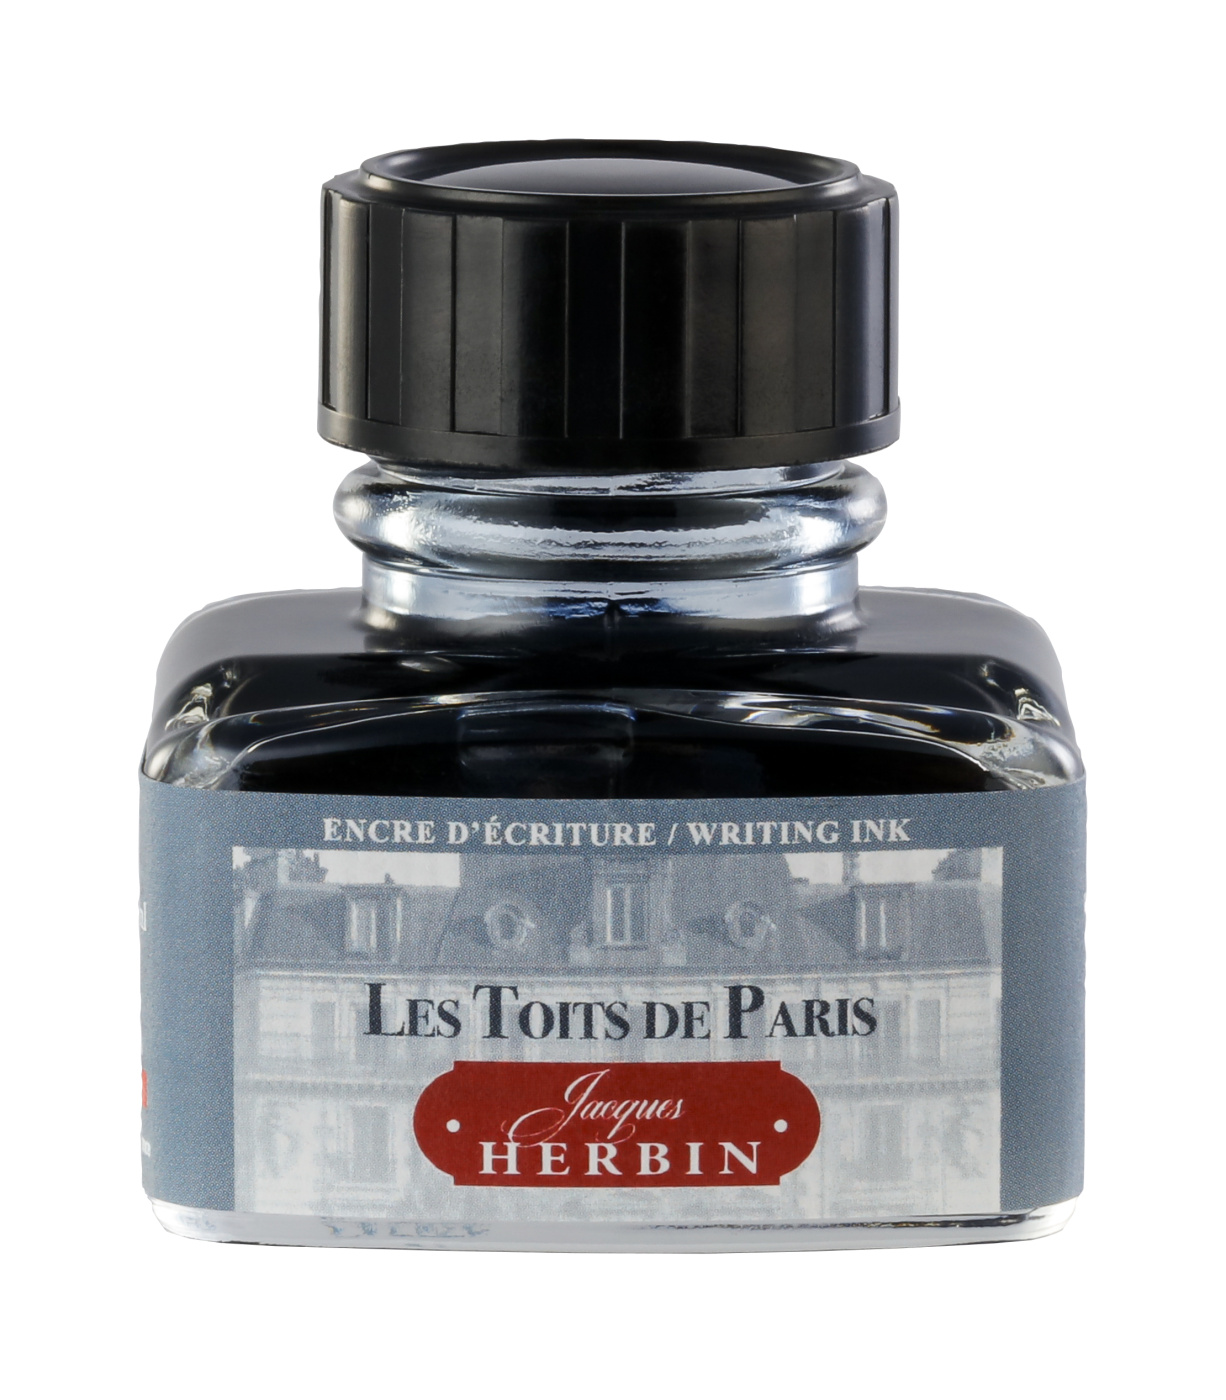 Чернила Herbin в банке 30 мл, Цвета Парижа Les Toits De Paris Серый Herbin-13806T